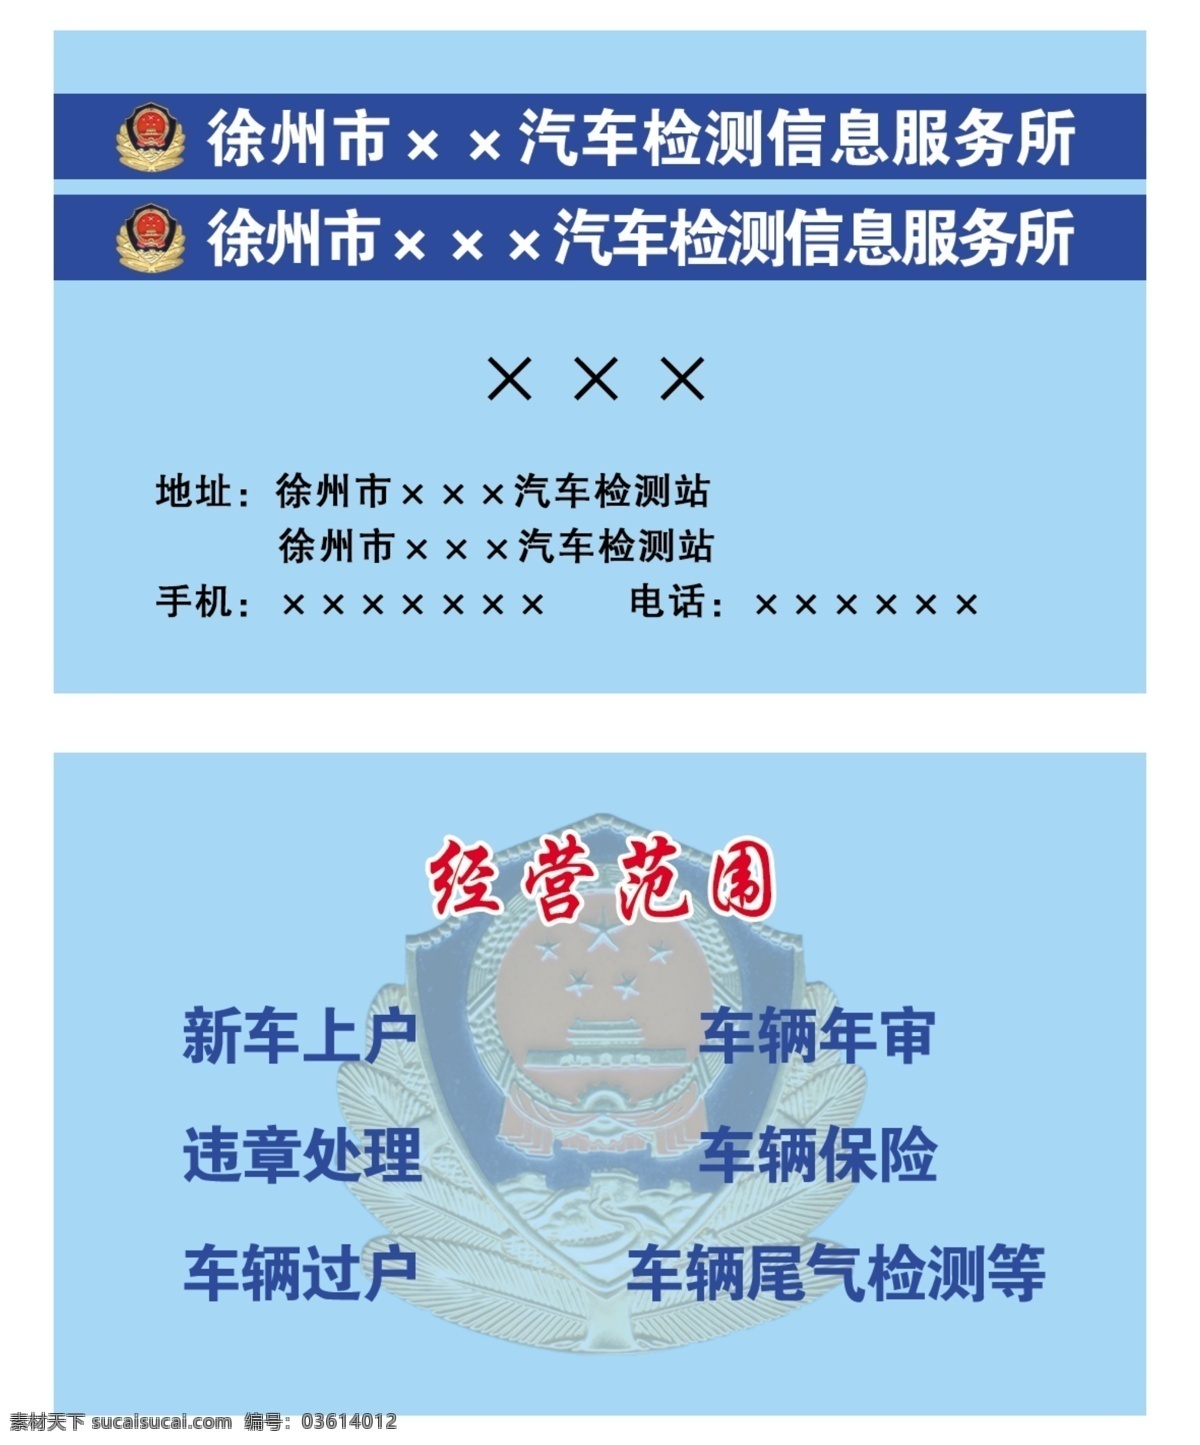 汽车 检测站 名片 尾气检测 徐州市 汽车检测名片 名片卡片 广告设计模板 源文件